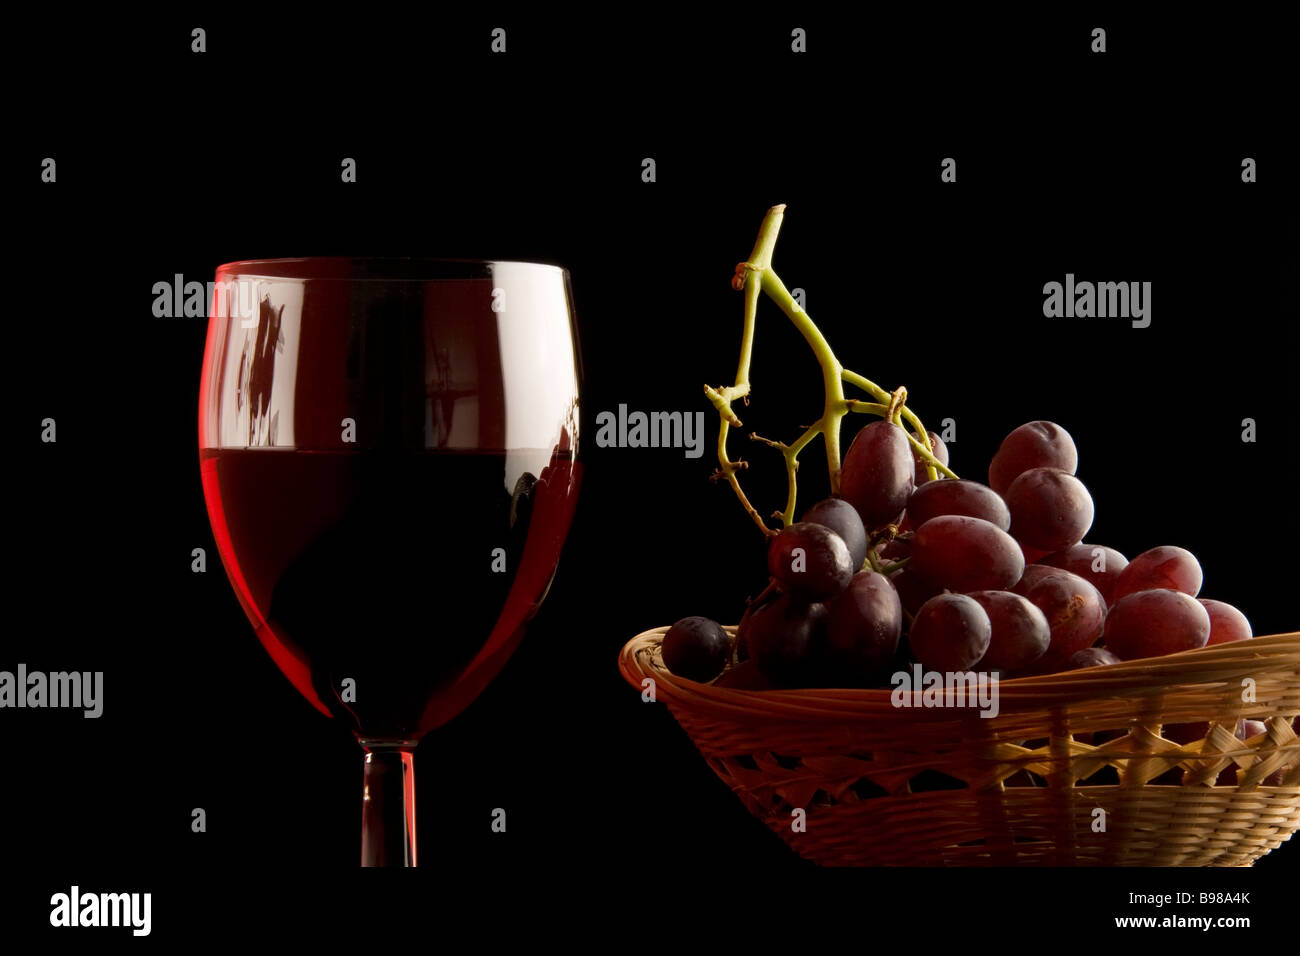 Un vaso de vino tinto y una cesta de uvas rojas. Foto de stock